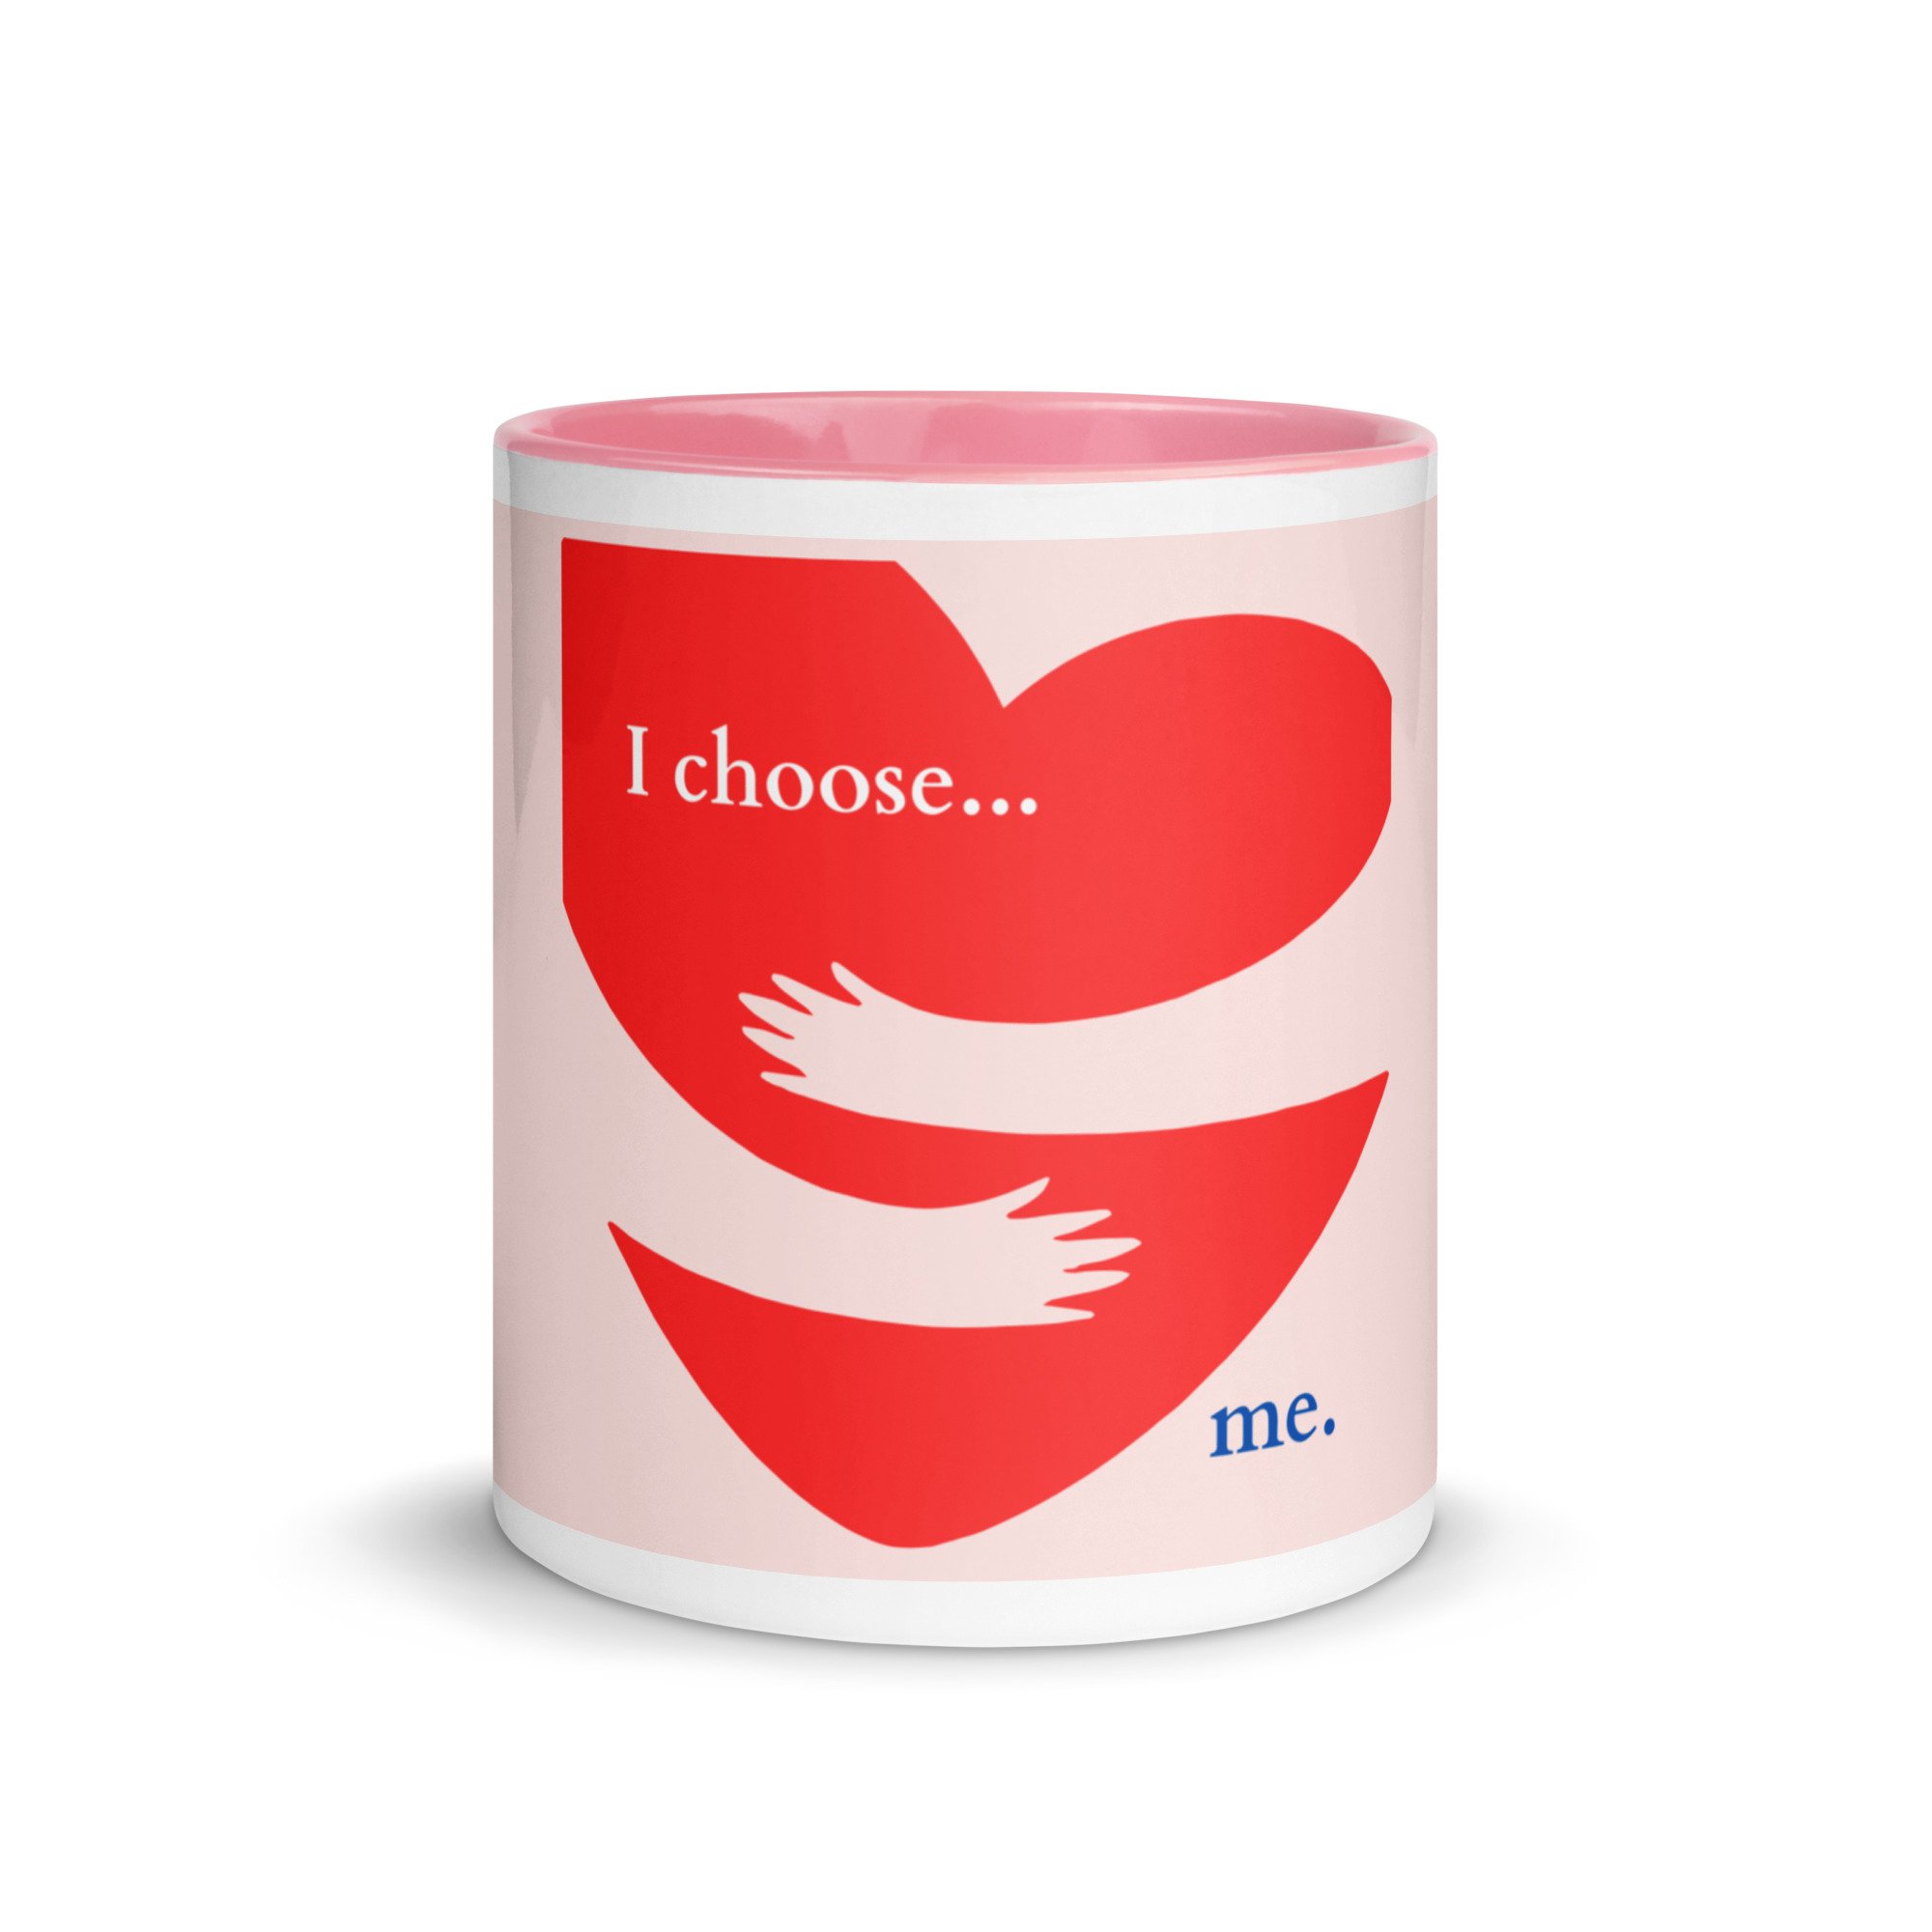 white-ceramic-mug-with-color-inside-pink-11-oz-front-656dabff2ee4f.jpg